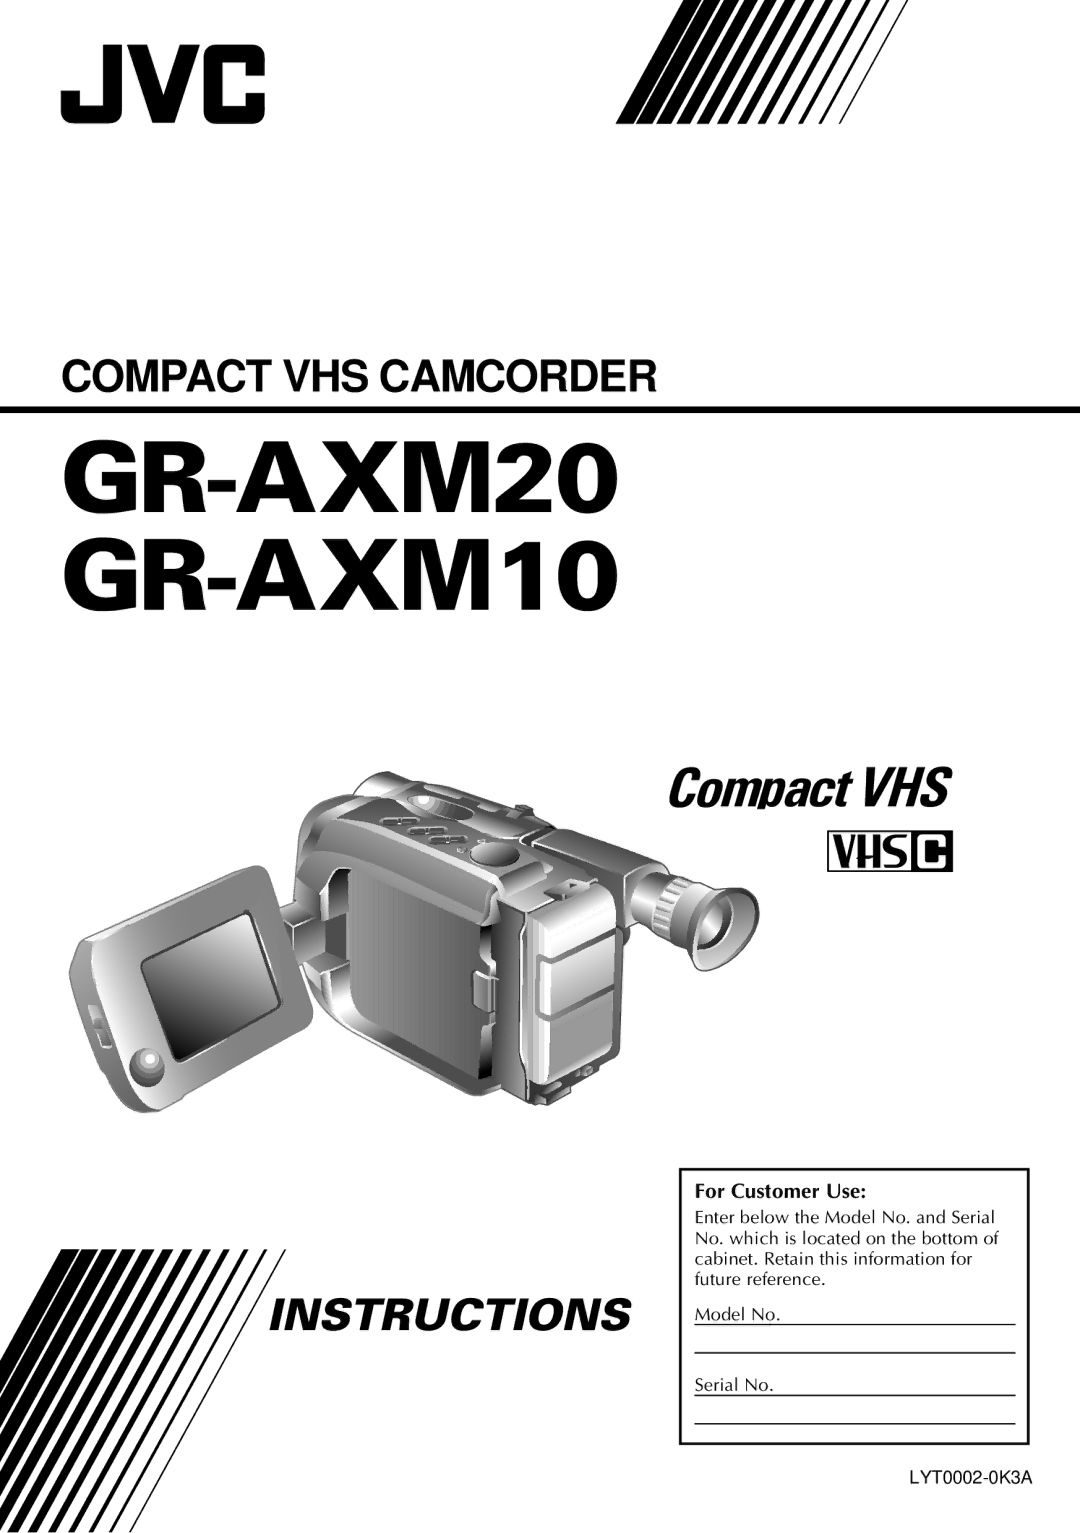 JVC manual GR-AXM20 GR-AXM10, For Customer Use 